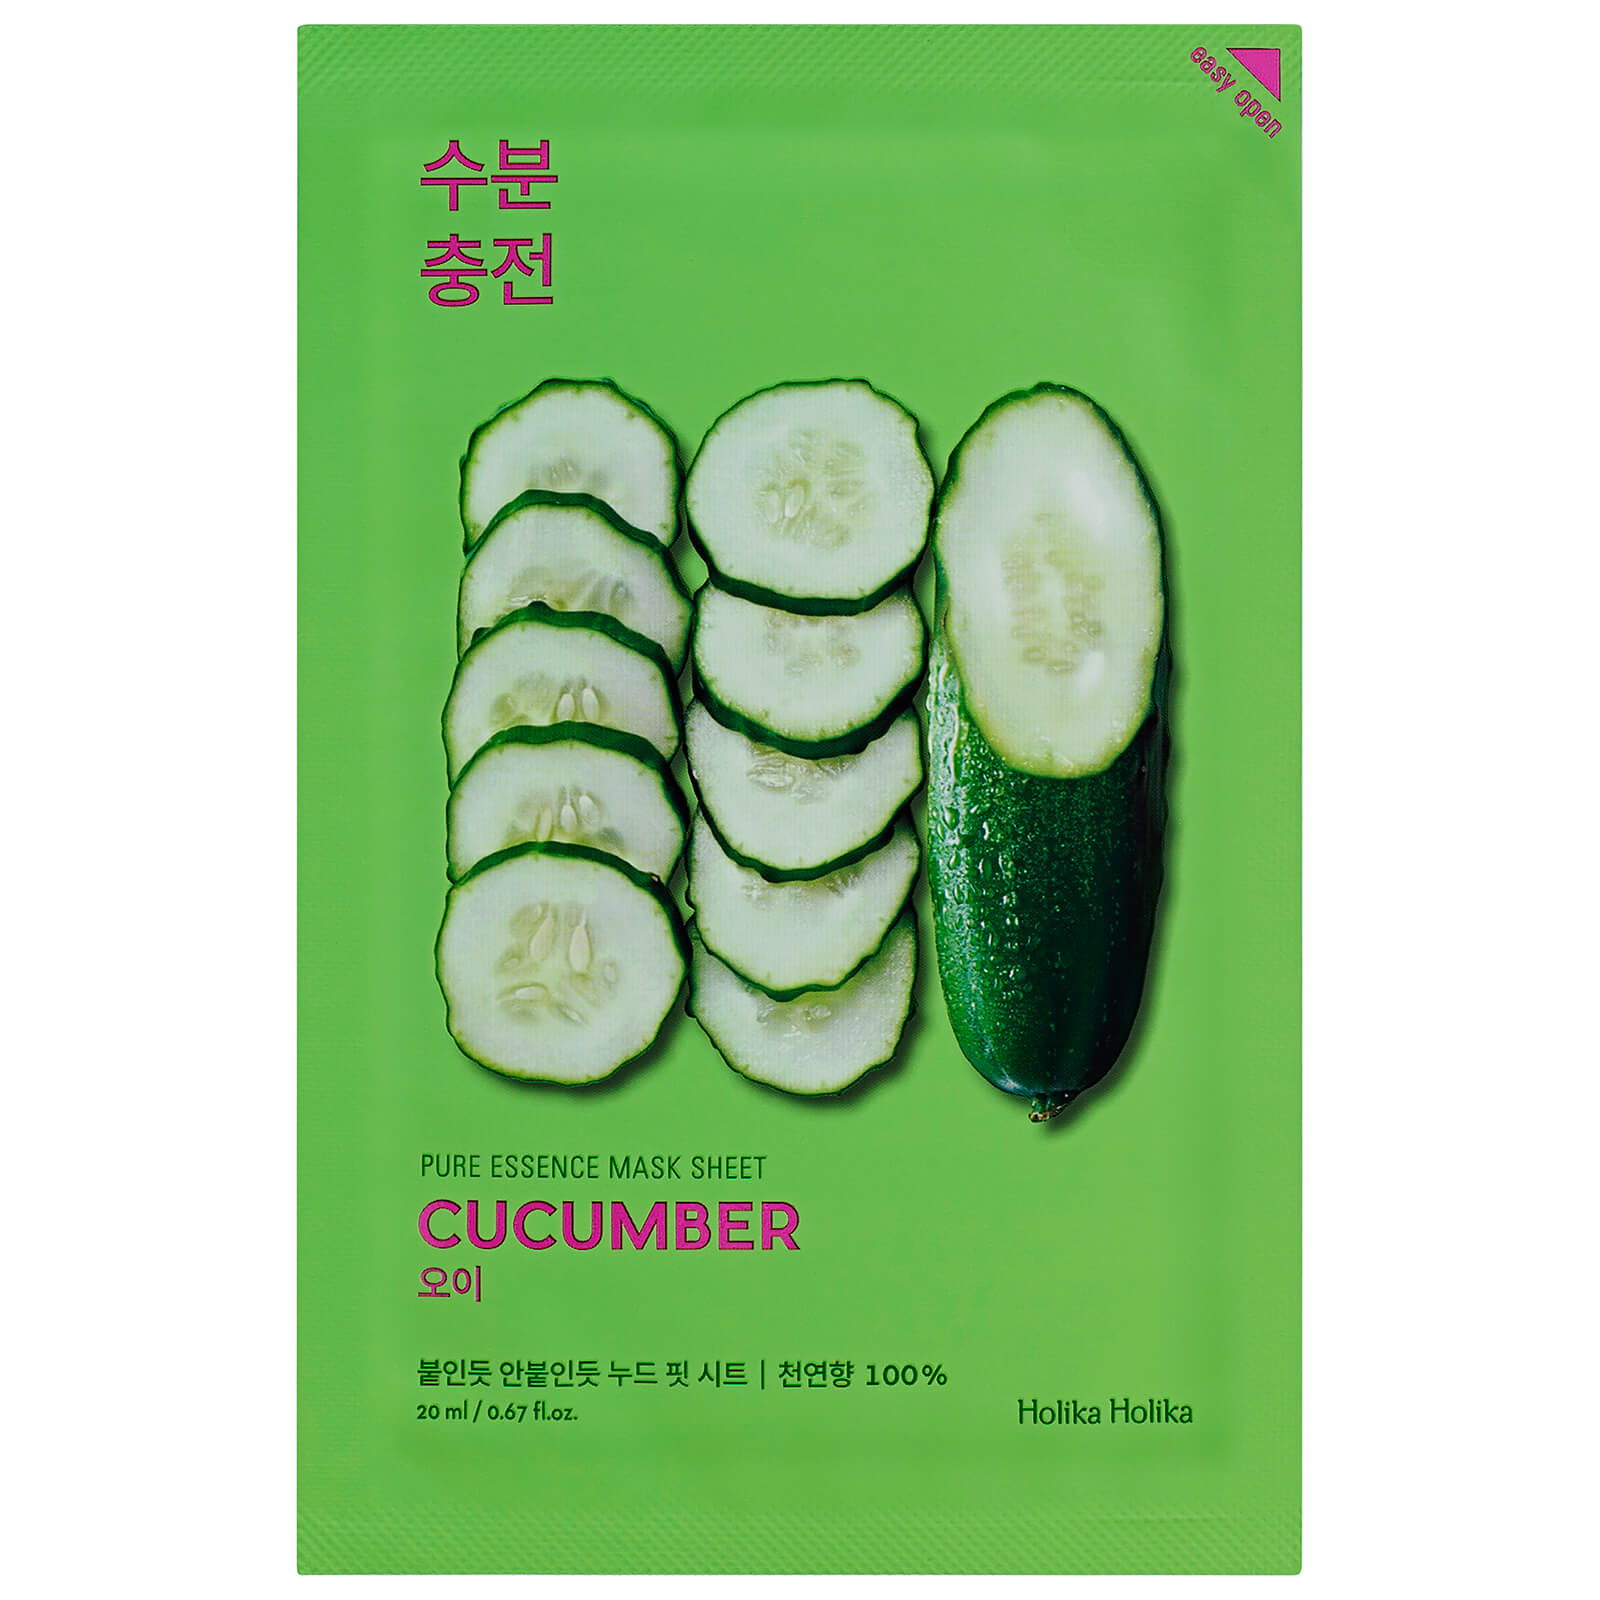 Image of Holika Holika Pure Essence Mask Sheet 20ml (Various Options) - Cucumber